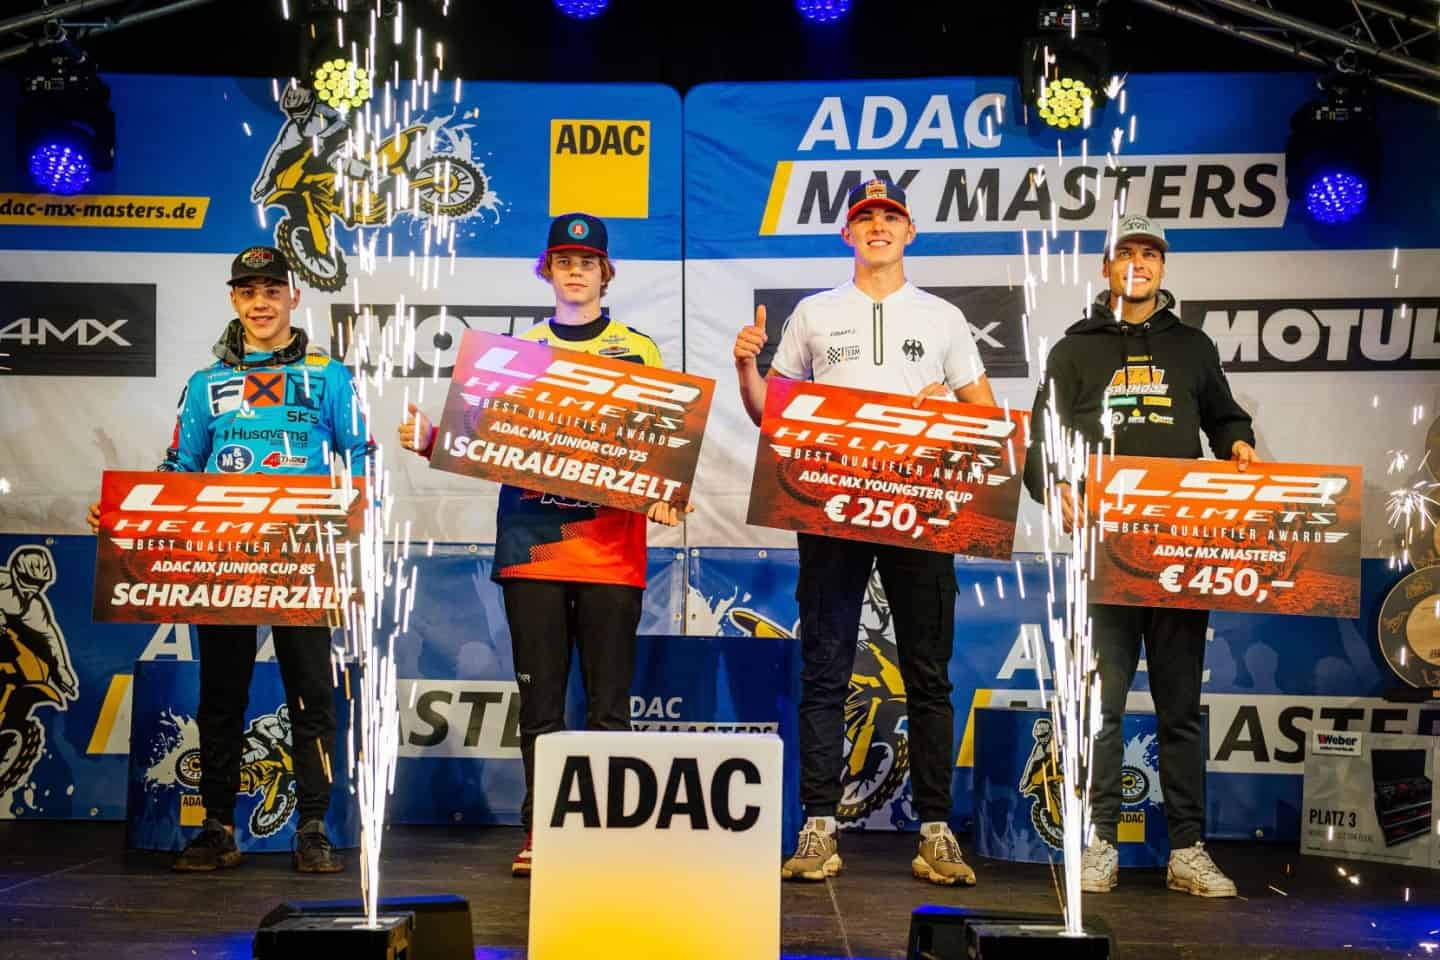 PM ADAC Motorsport - ADAC MX Masters in Fürstlich Drehna